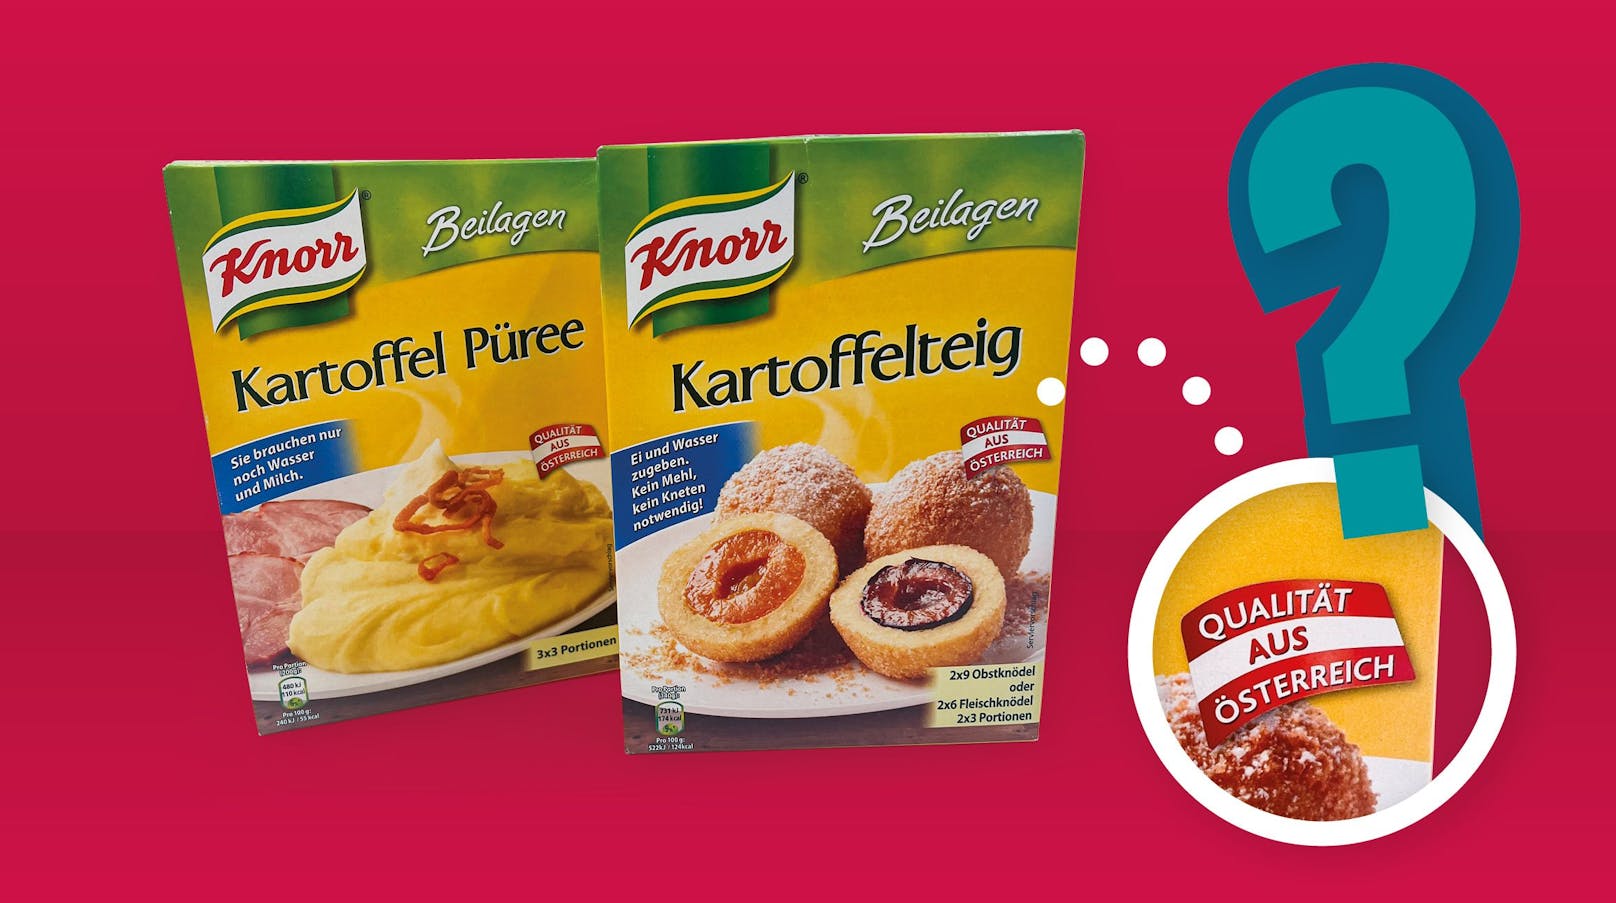 Knorr wirbt bei seinen Kartoffelprodukten mit "Qualität aus Österreich". Zur Herkunft der Kartoffeln gibt es keine weiteren Angaben. Hier müssen Konsument*innen davon ausgehen, dass die Kartoffeln aus Österreich stammen. Wieso gibt der Hersteller das dann aber nicht einfach an?